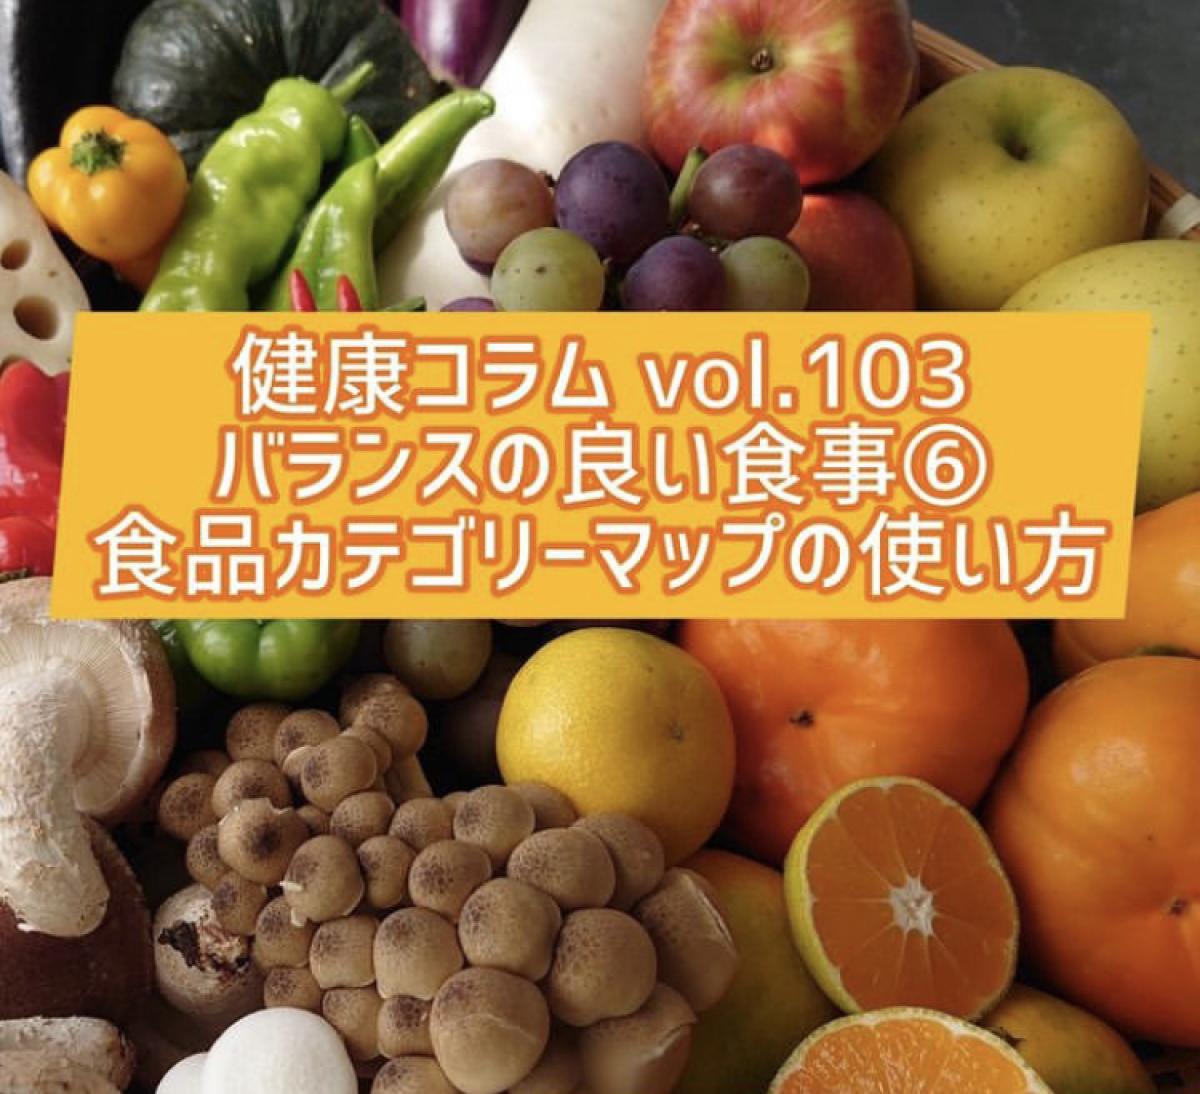 栄養コンシェルジュを取得した管理栄養士の岩田潤一郎さんが、健康コラムにて「バランスの良い食事⑥」について執筆されています！【栄養 コンシェルジュ取得後の活躍・仕事】